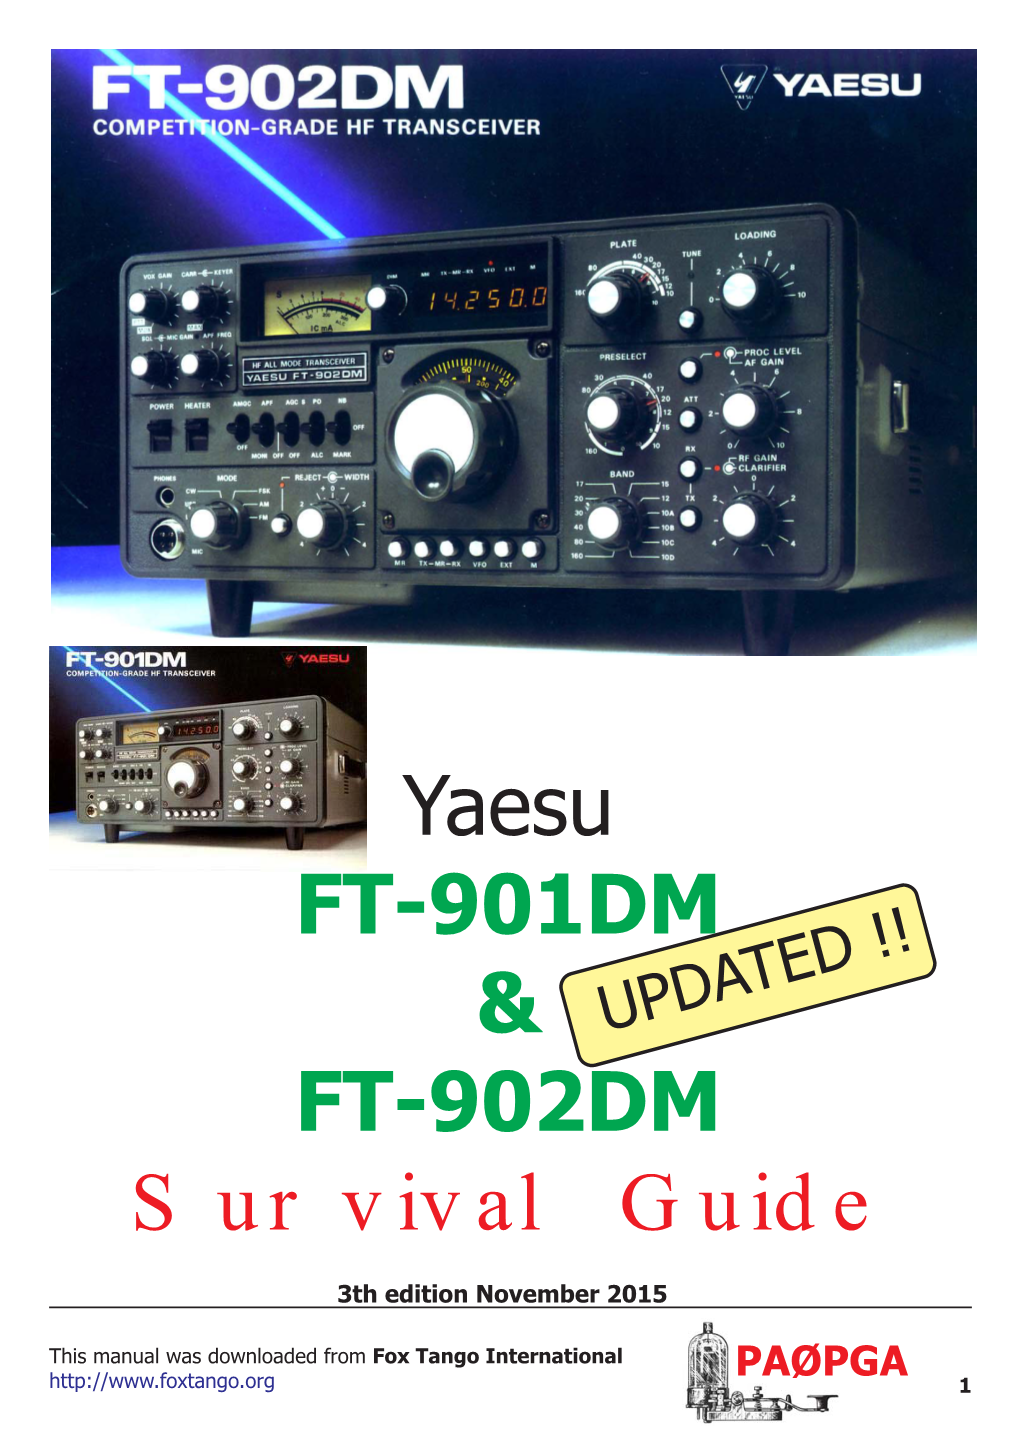 Yaesu FT-901DM & FT-902DM Survival Guide